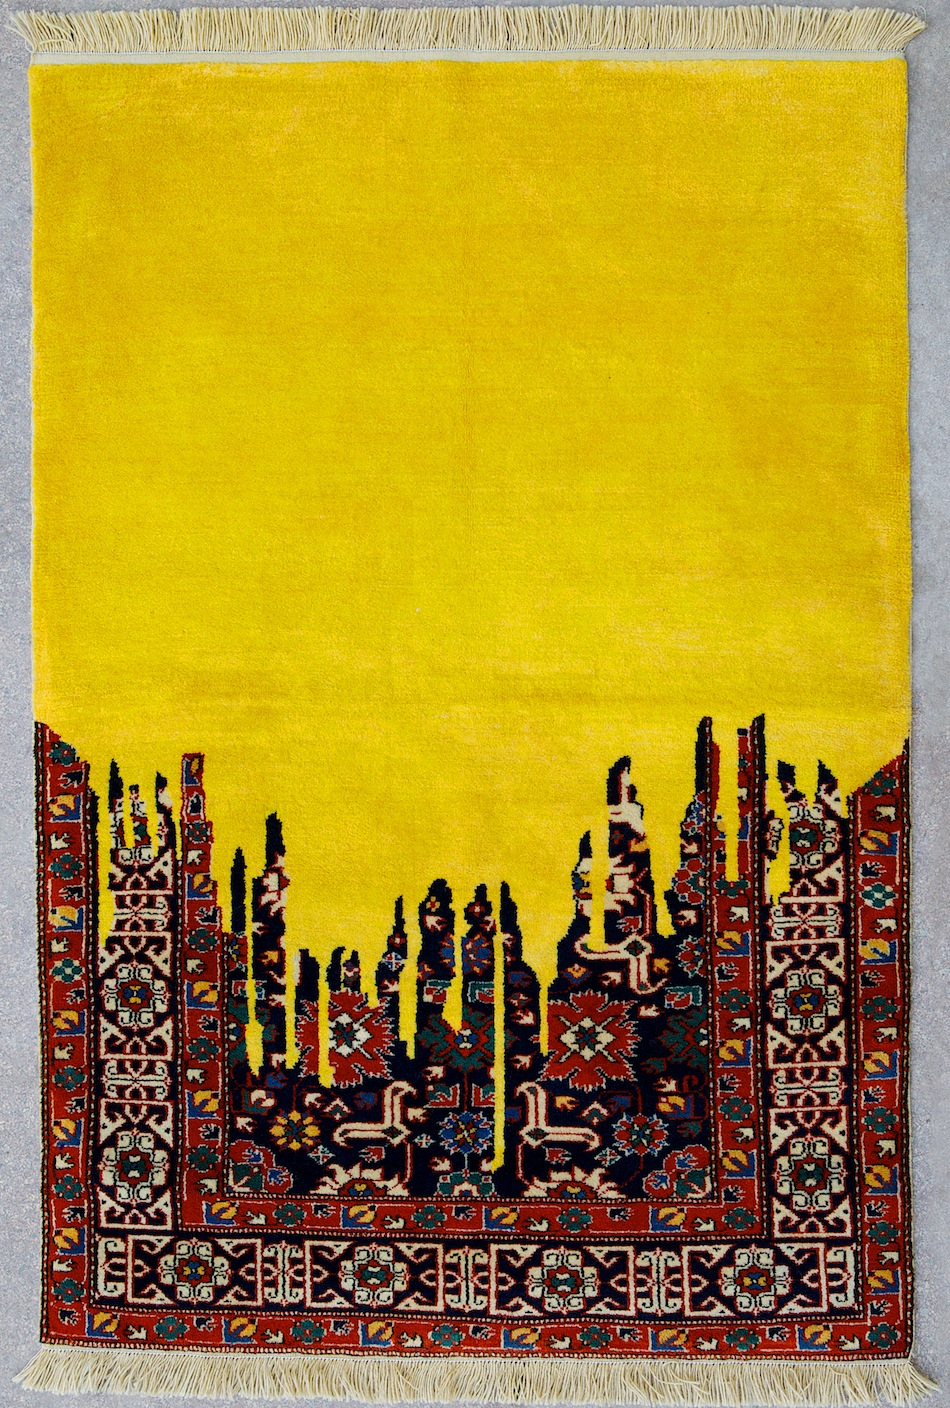 Трёхмерный формат древних ковров в арт-объектах Фаига Ахмеда